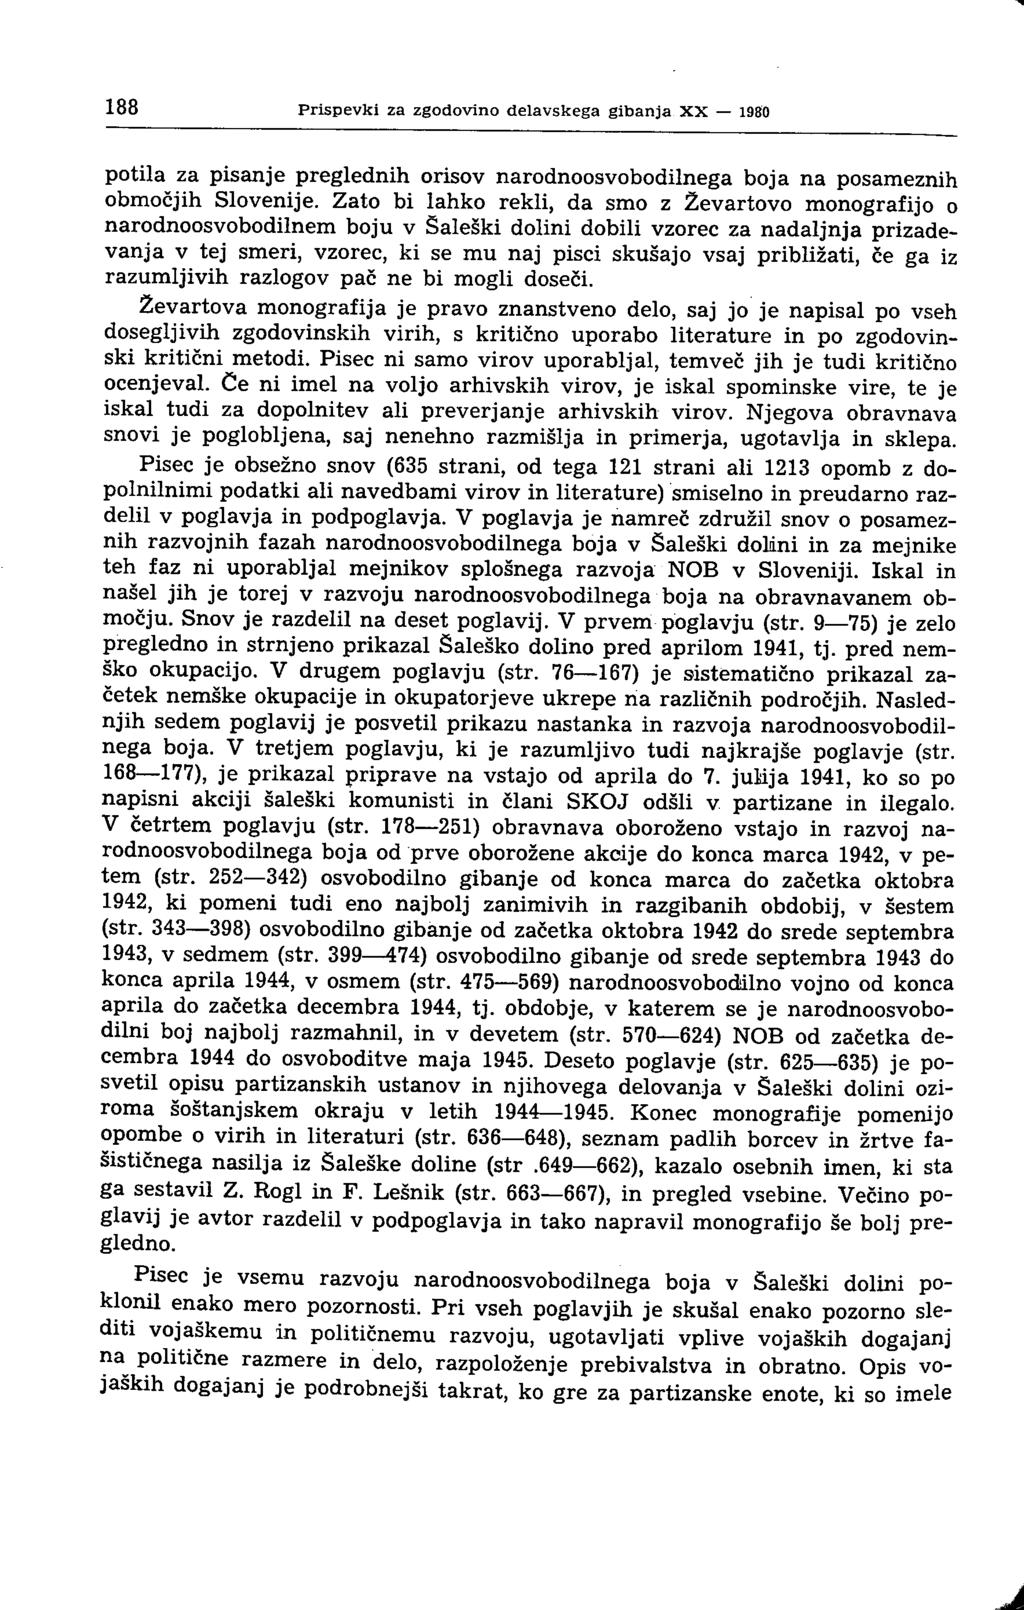 188 Prispevki za zgodovino delavskega gibanja XX 1980 potila za pisanje preglednih orisov narodnoosvobodilnega boja na posameznih območjih Slovenije.